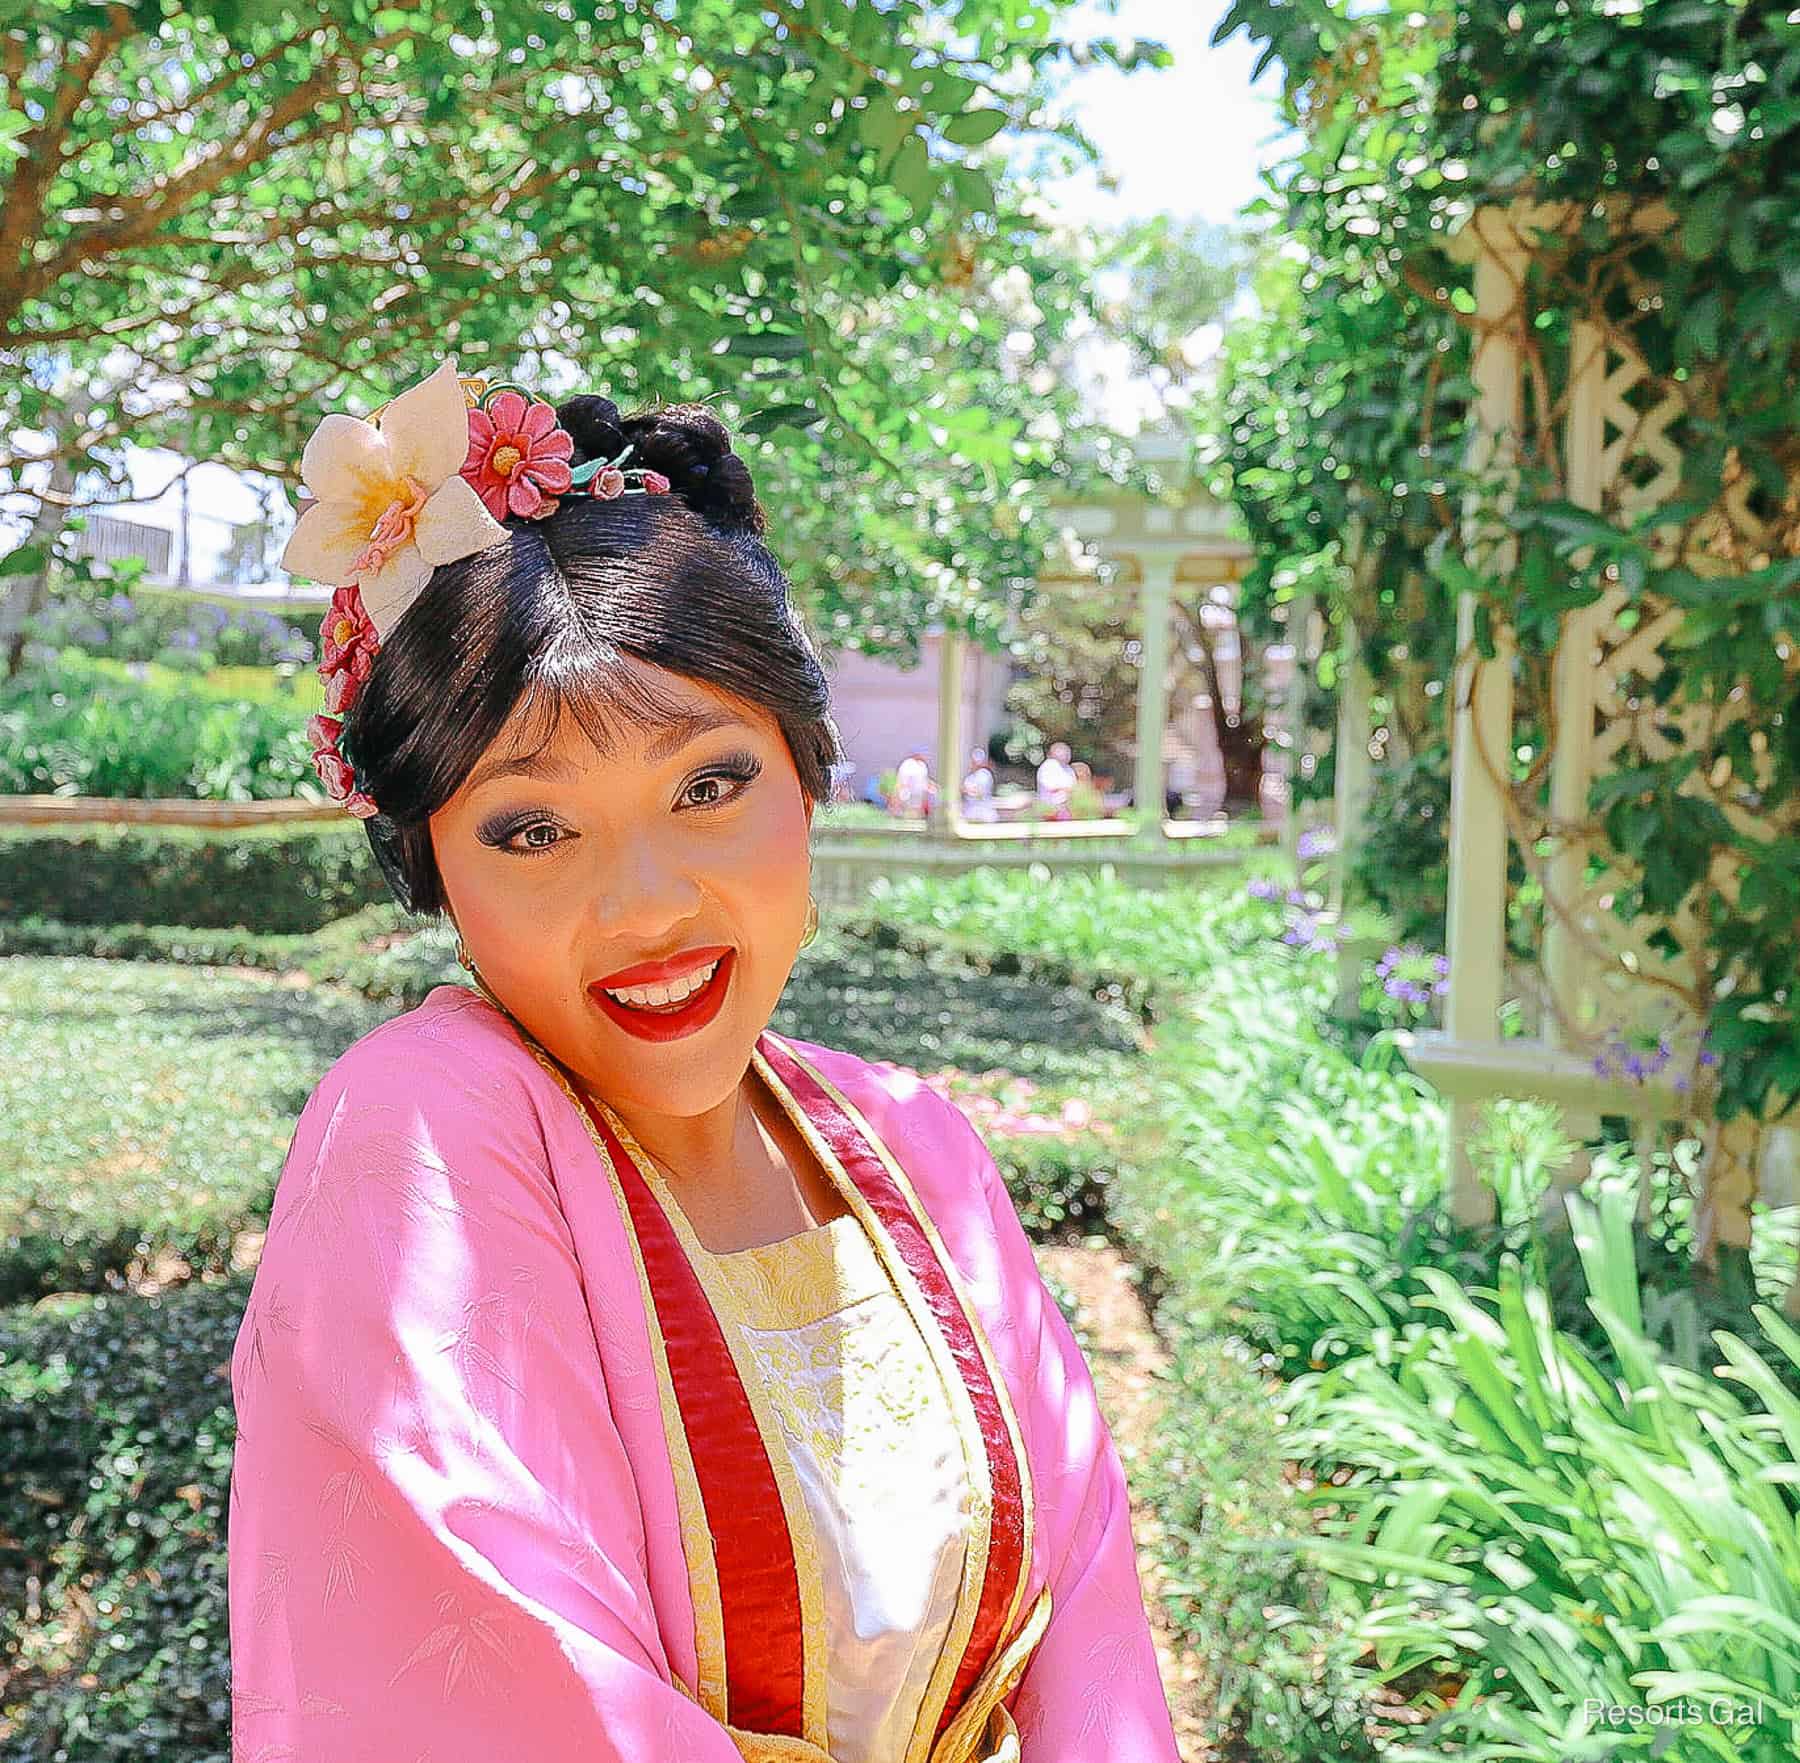 Mulan close up at her Magic Kingdom meet-and-greet location 